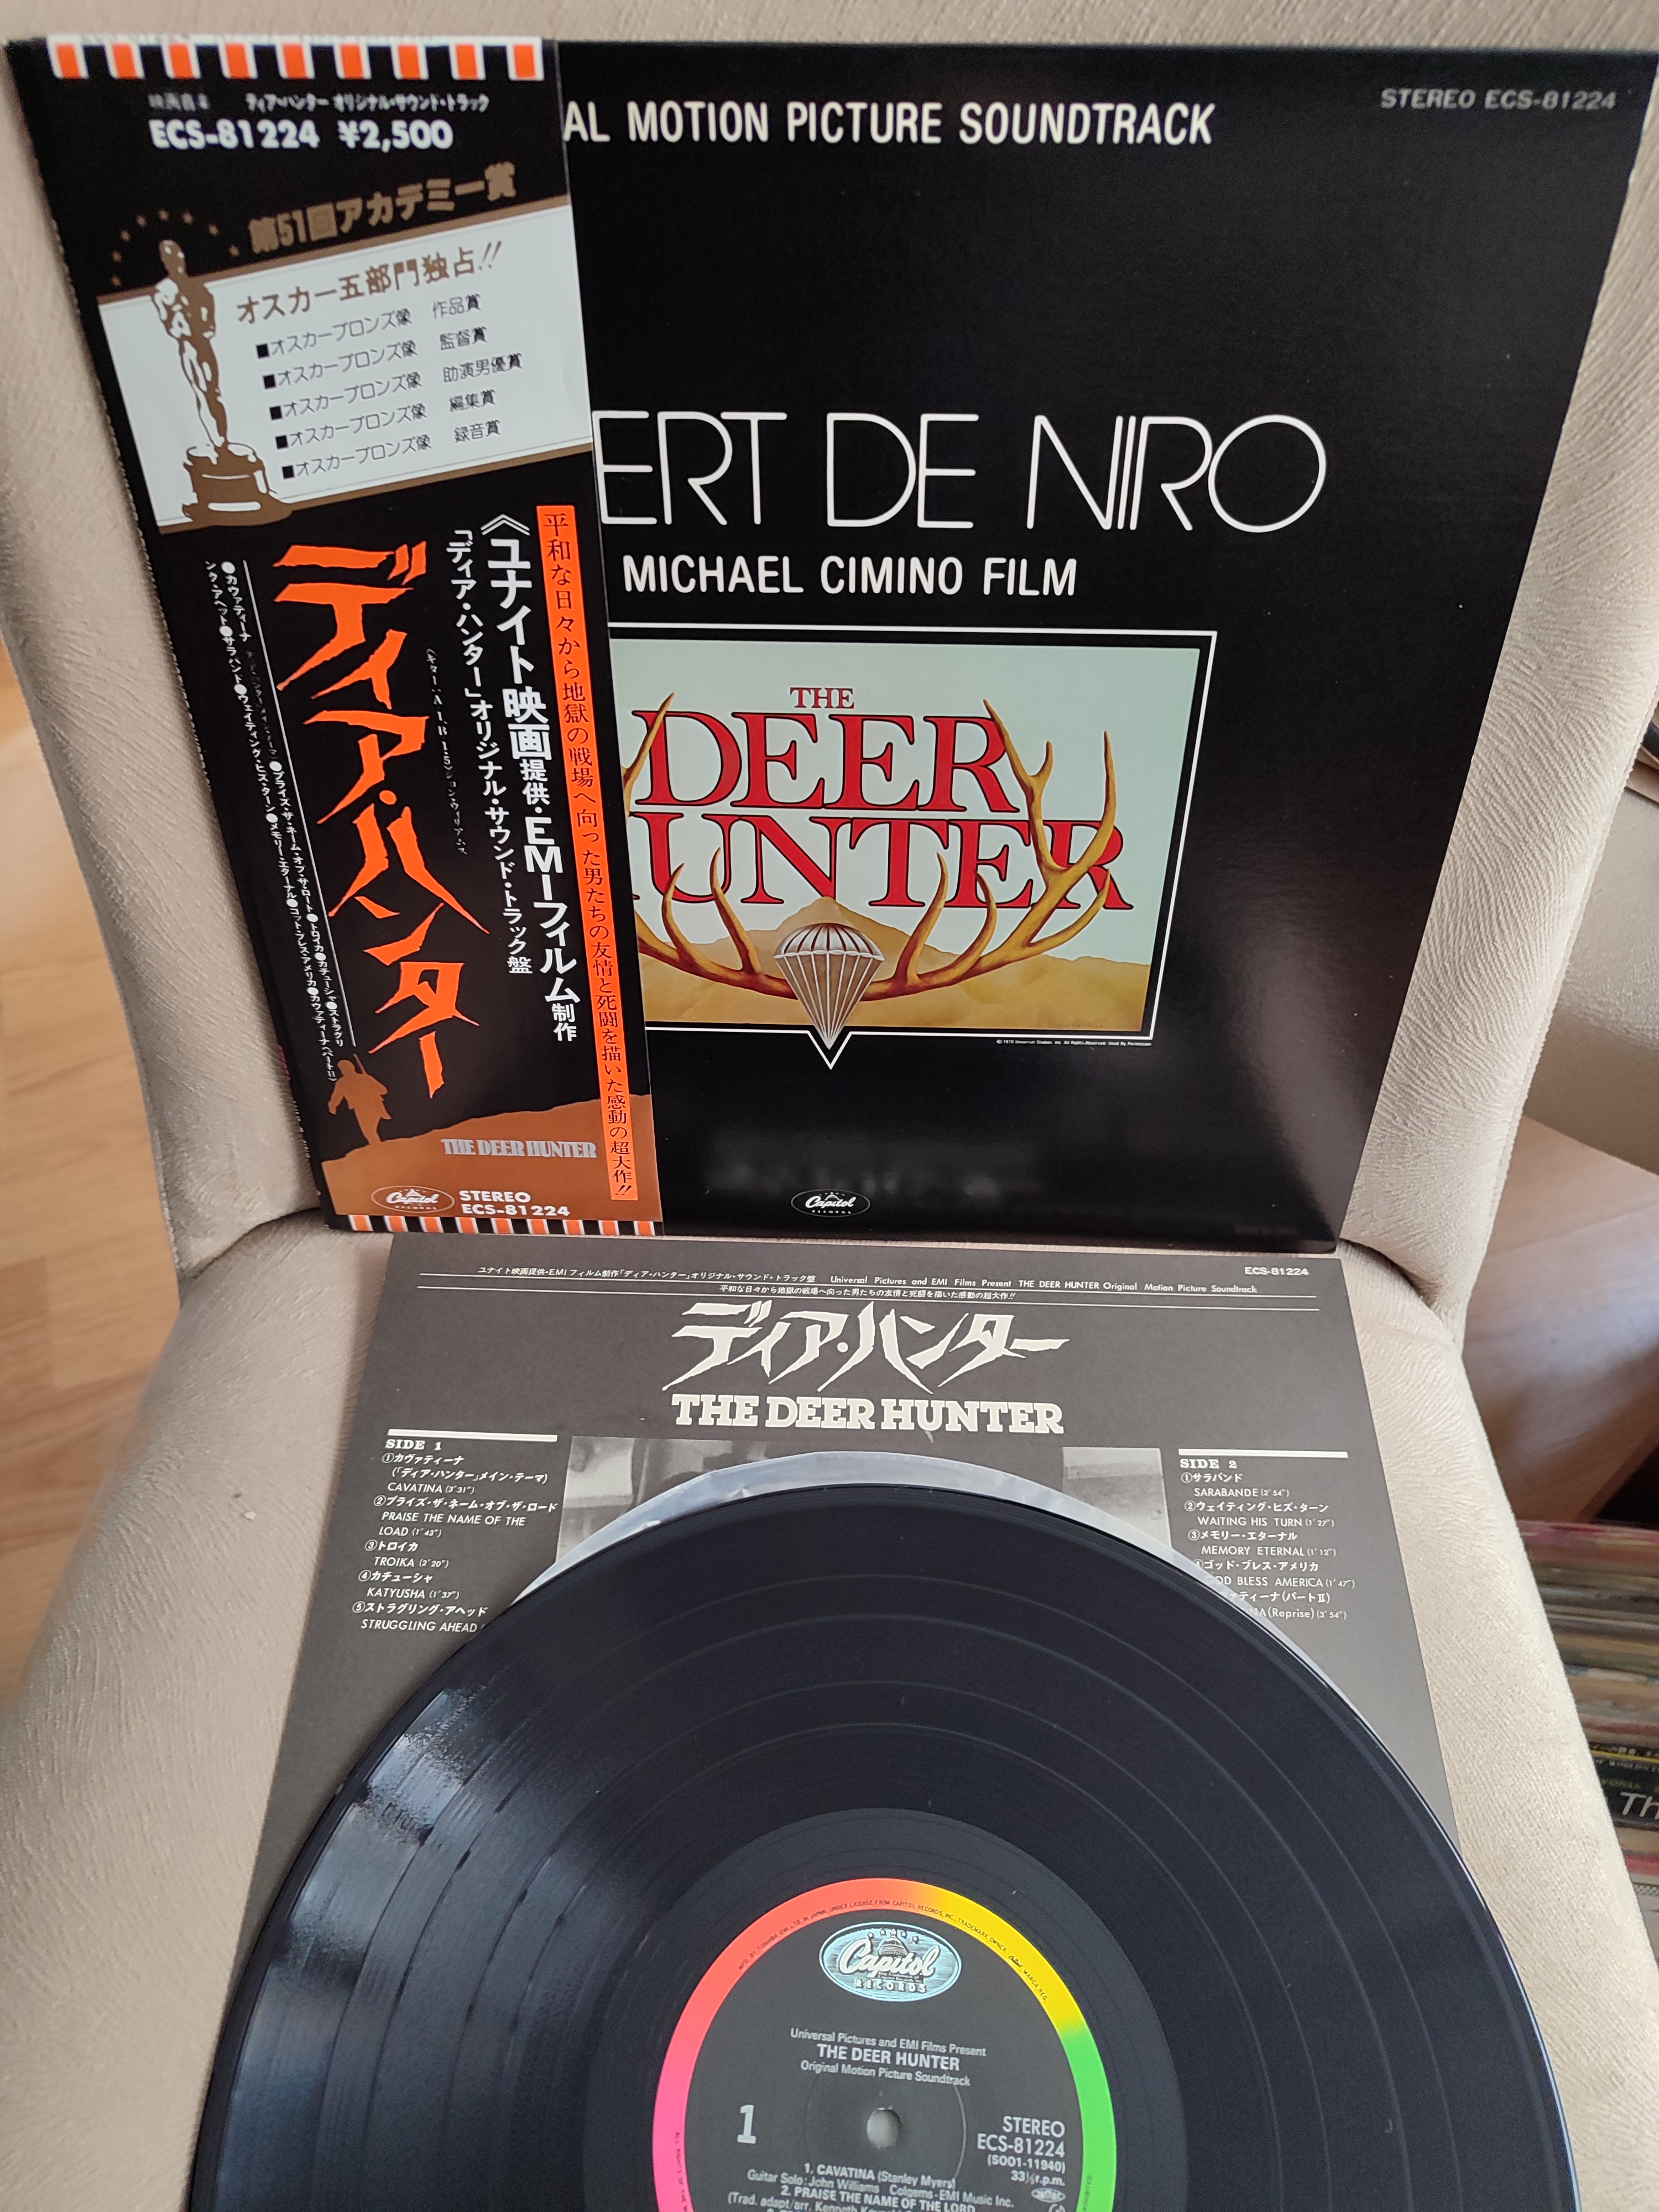 DEER HUNTER / AVCI - 1979 Japonya Basım 33 lük Soundrack Plak Albüm - Obi’li Temiz 2. el